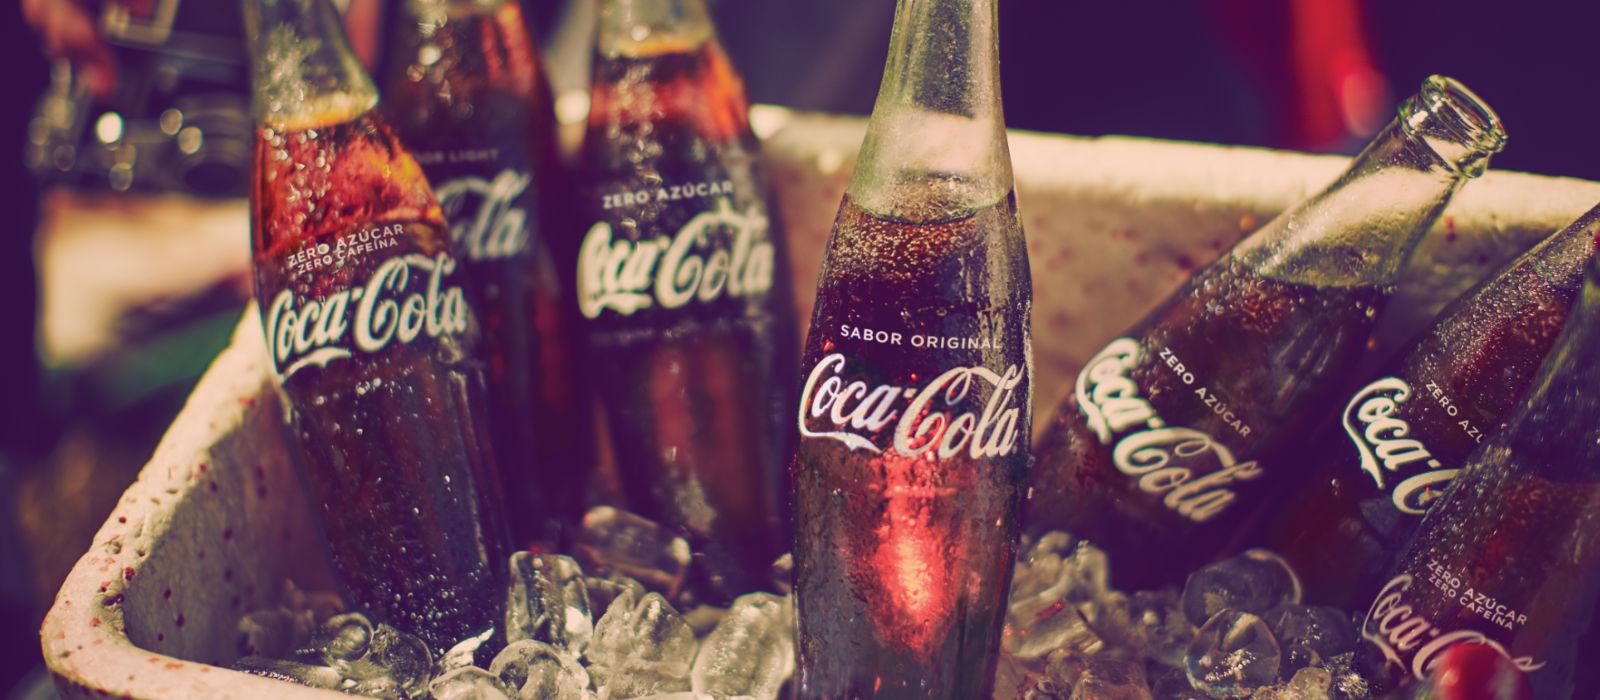 Un color para todos los gustos  Coca-Cola Zero Azúcar Zero Cafeína 